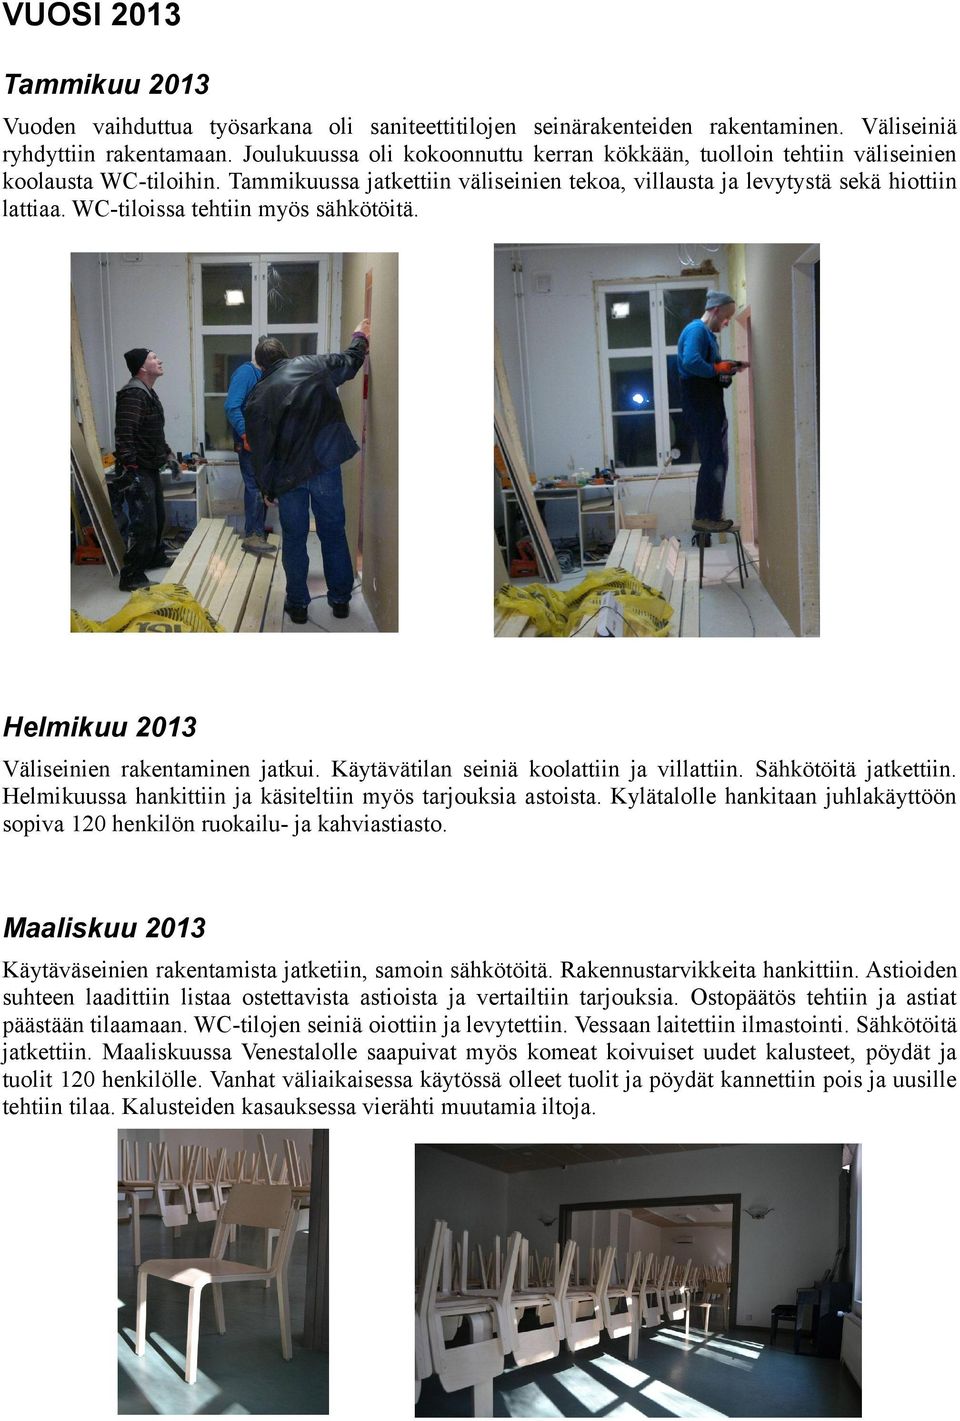 WC-tiloissa tehtiin myös sähkötöitä. Helmikuu 2013 Väliseinien rakentaminen jatkui. Käytävätilan seiniä koolattiin ja villattiin. Sähkötöitä jatkettiin.